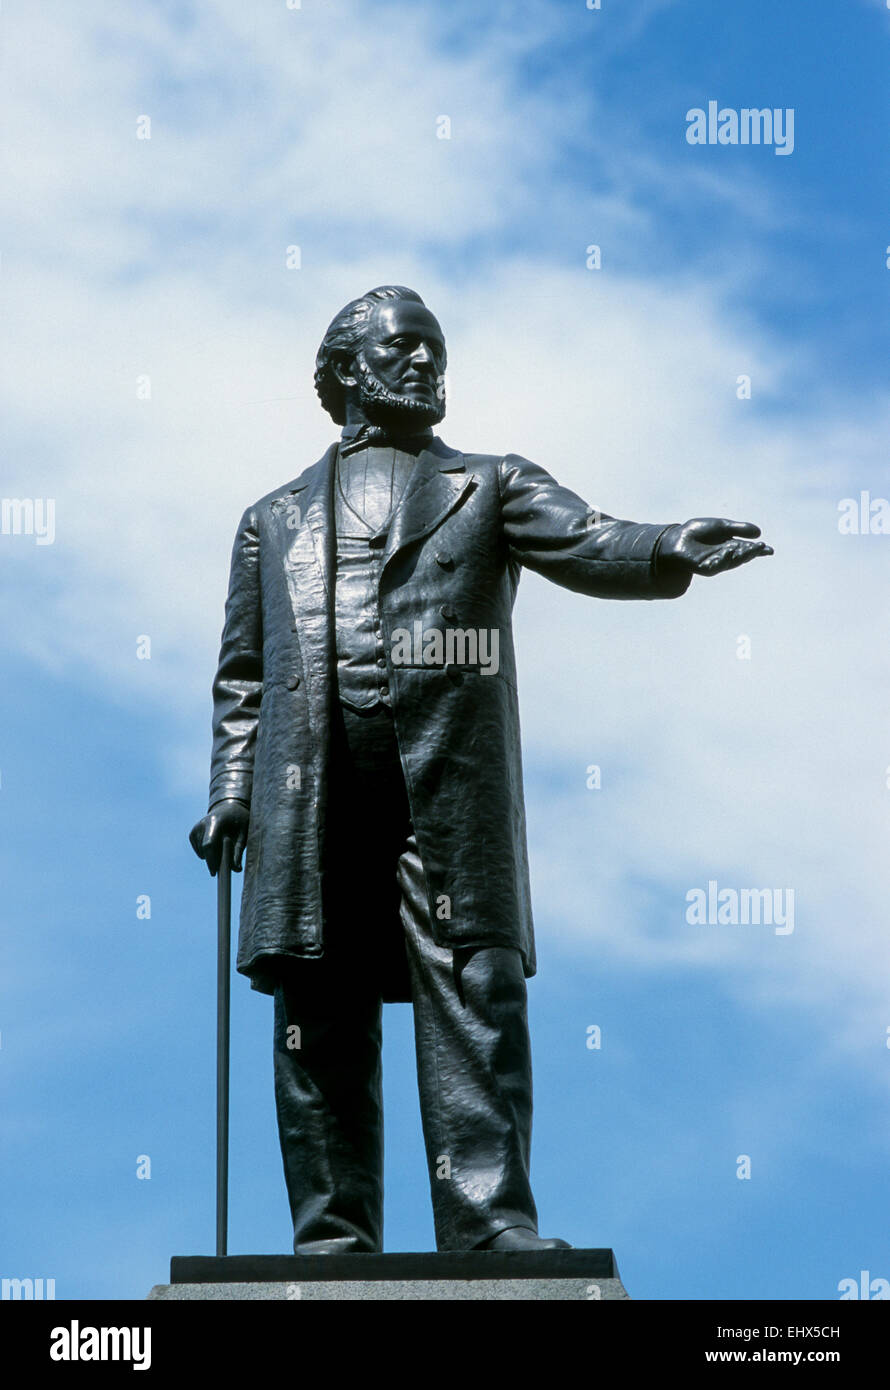 SALT LAKE CITY, UT - 13 SEPTEMBRE : une statue de Brigham Young se trouve dans le centre de Salt Lake City, Utah, le 13 septembre 1998. Banque D'Images